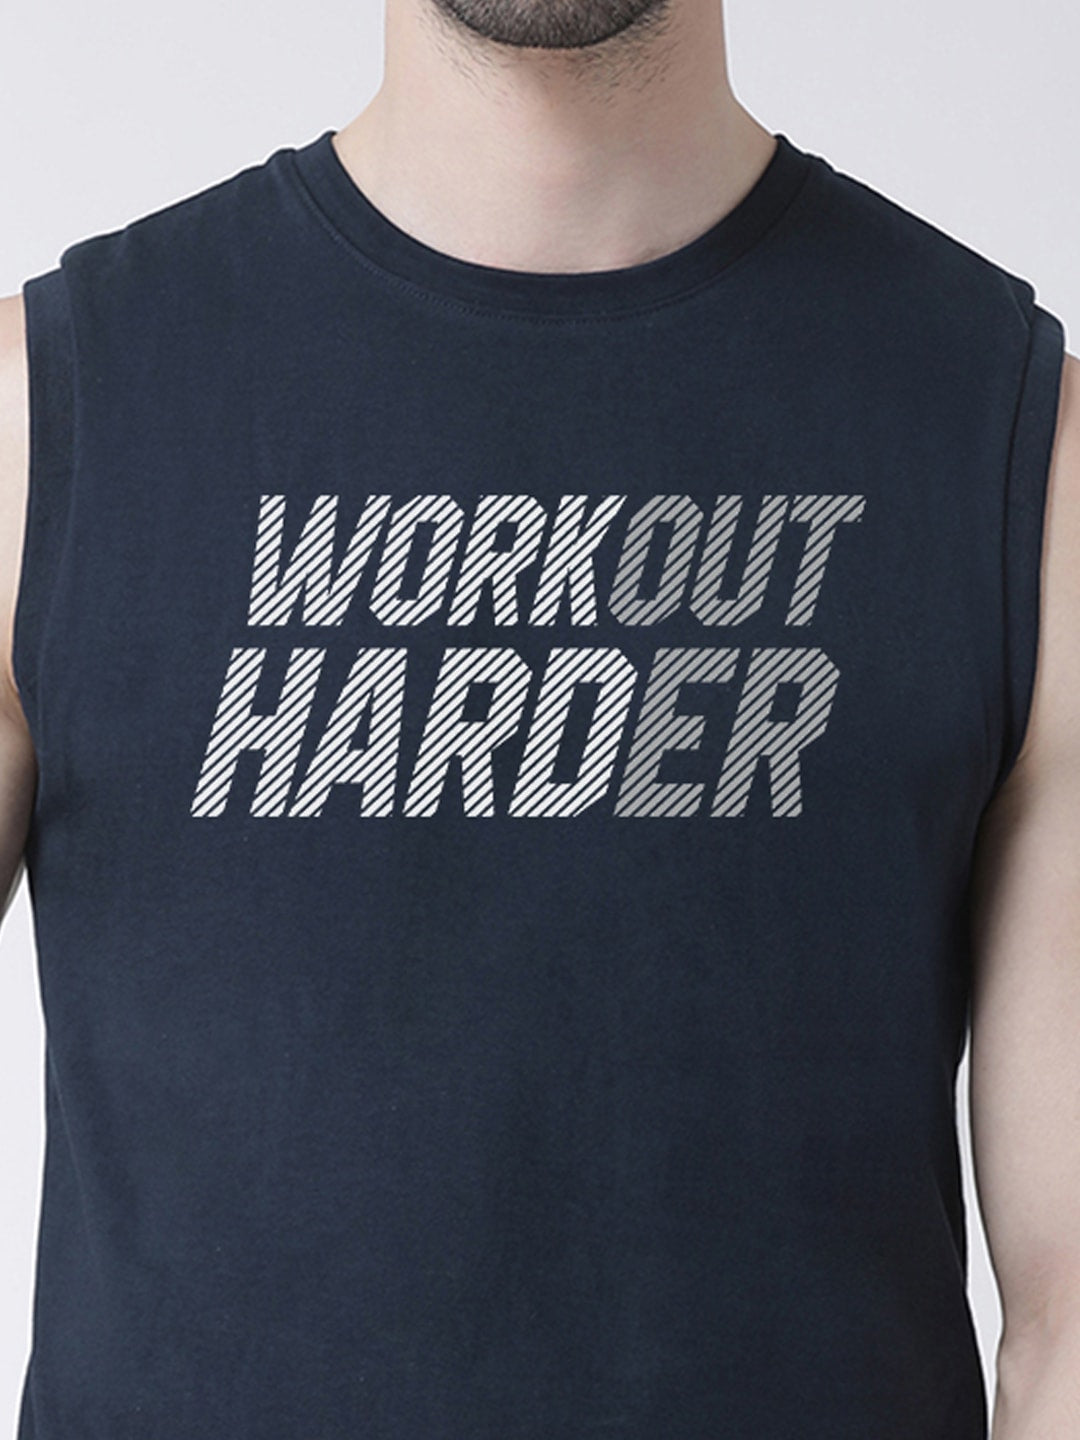 Men Workout Harder Printed Cotton Gym Vest - Friskers